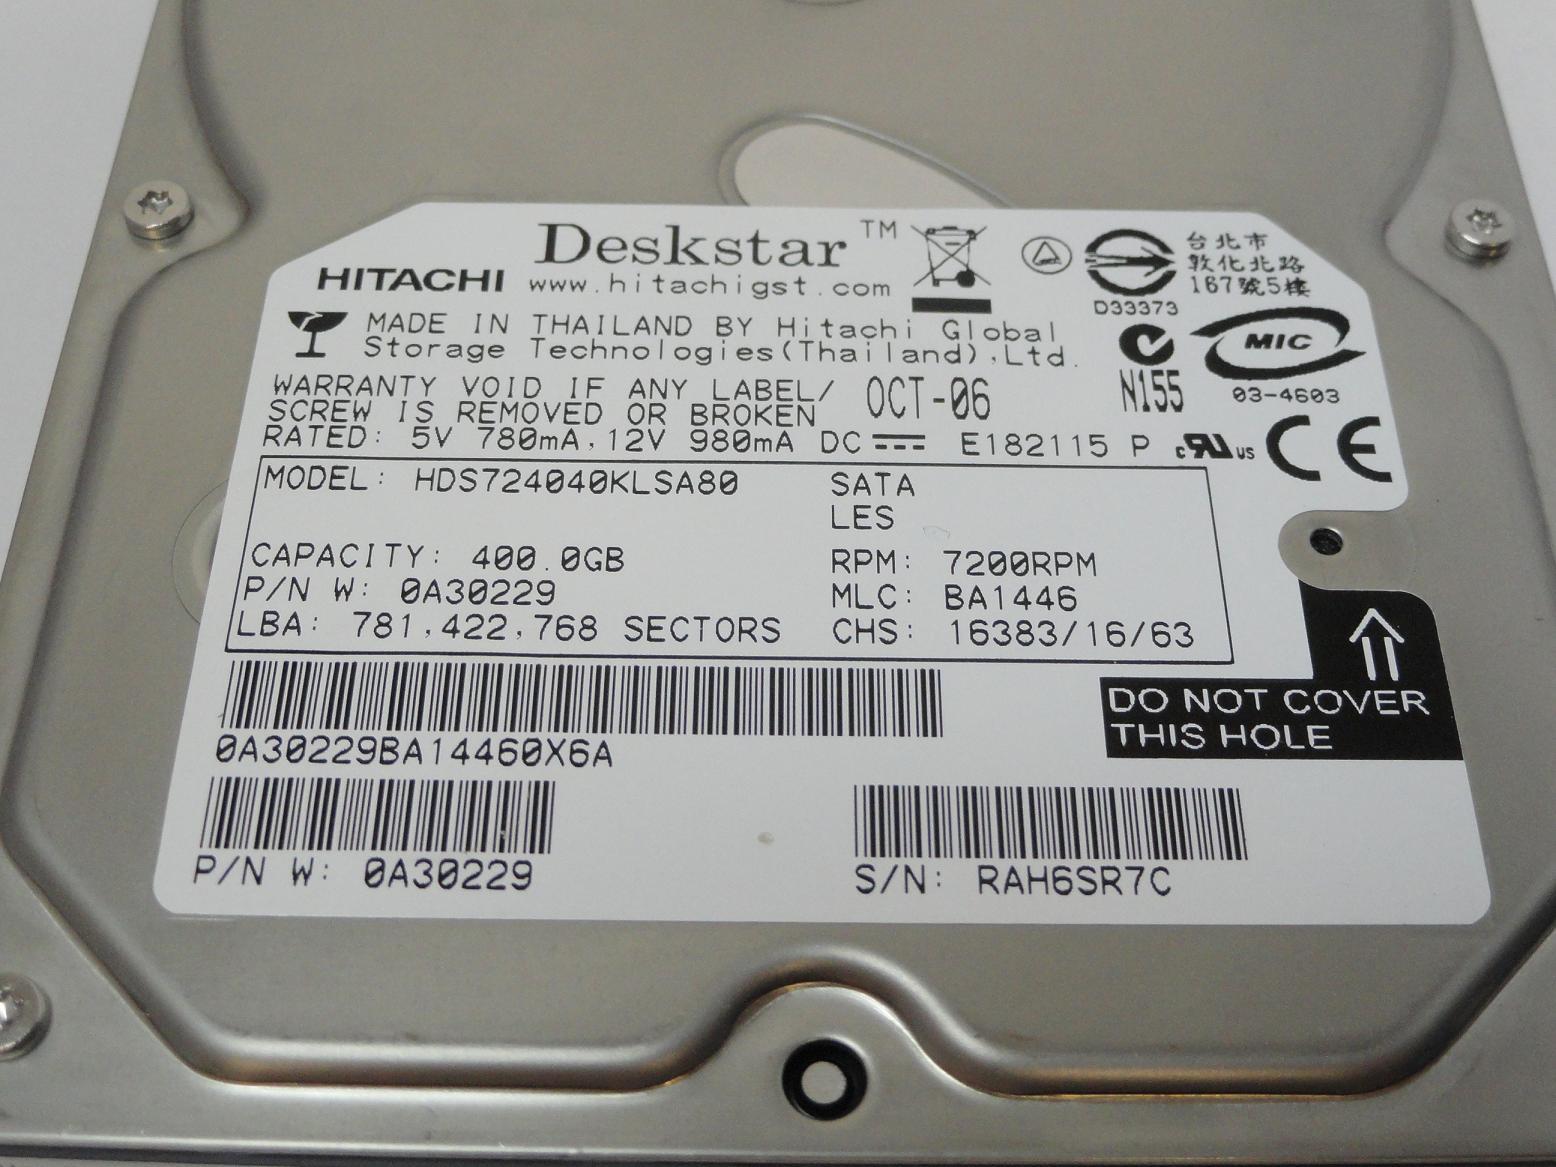 MC6708_0A30229_Hitachi 400GB SATA 7200rpm 3.5in HDD - Image3